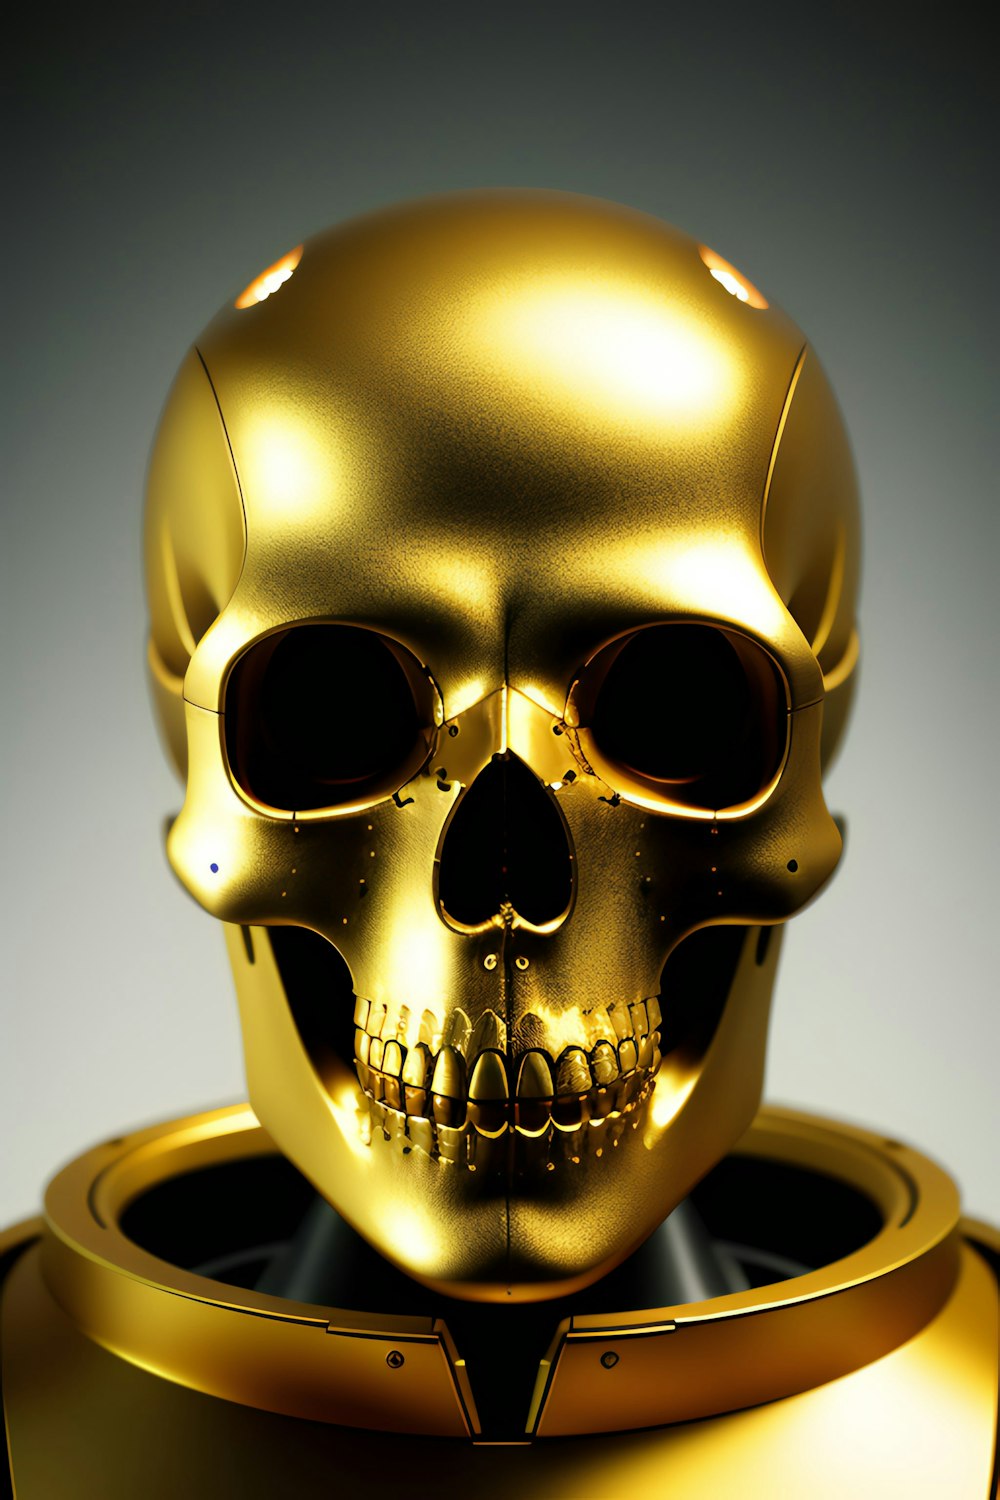 Golden skull steam фото 45